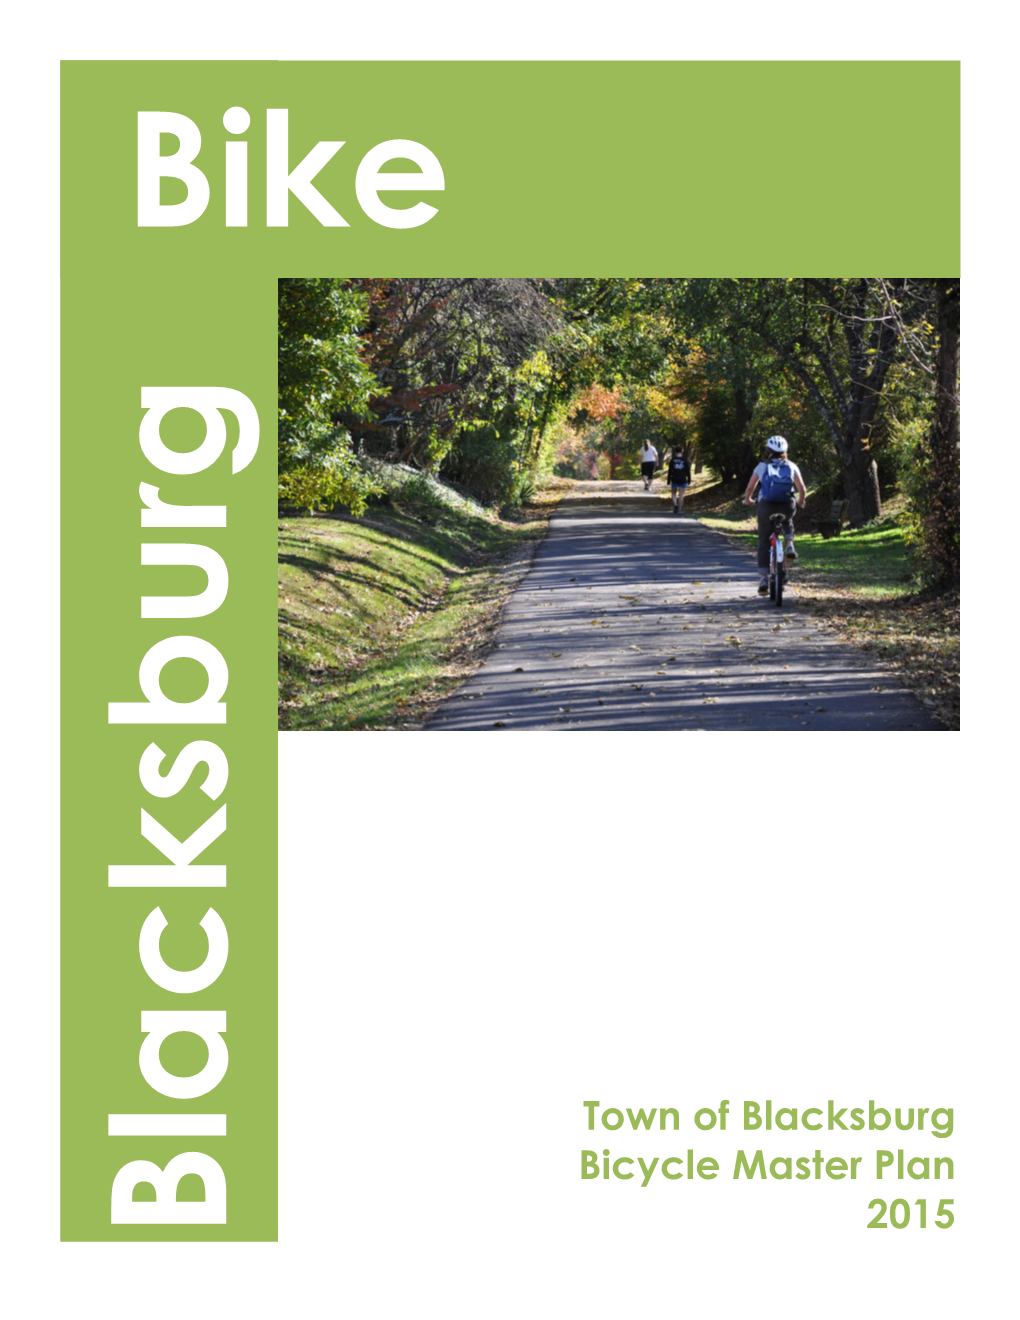 Town of Blacksburg Bicycle Master Plan 2015